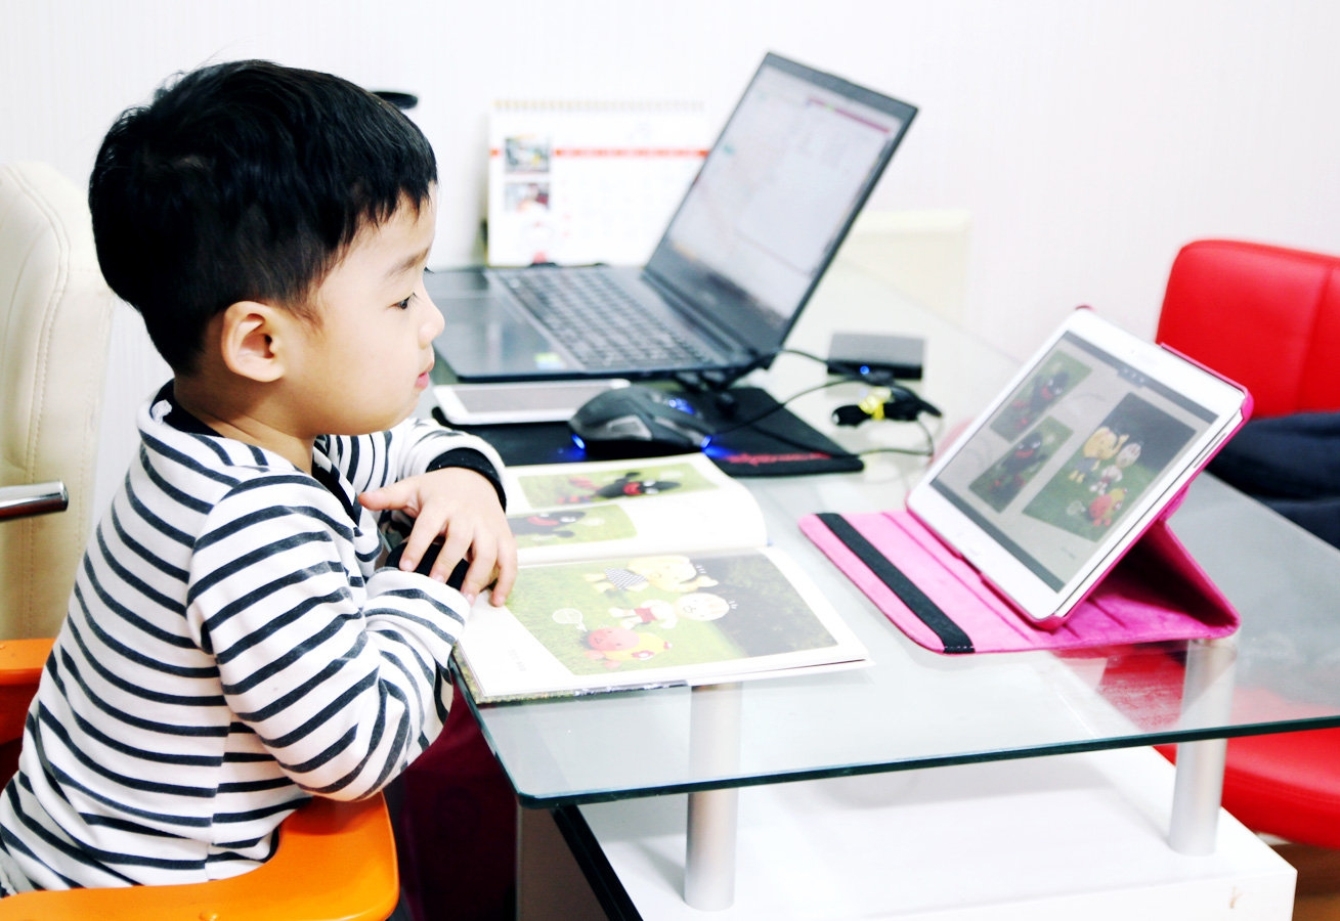 한 어린이가 교재가 놓인 책상위에 웅진북클럽 화면이 나오는 태블릿을 바라보는 모습을 보여주고 있습니다.